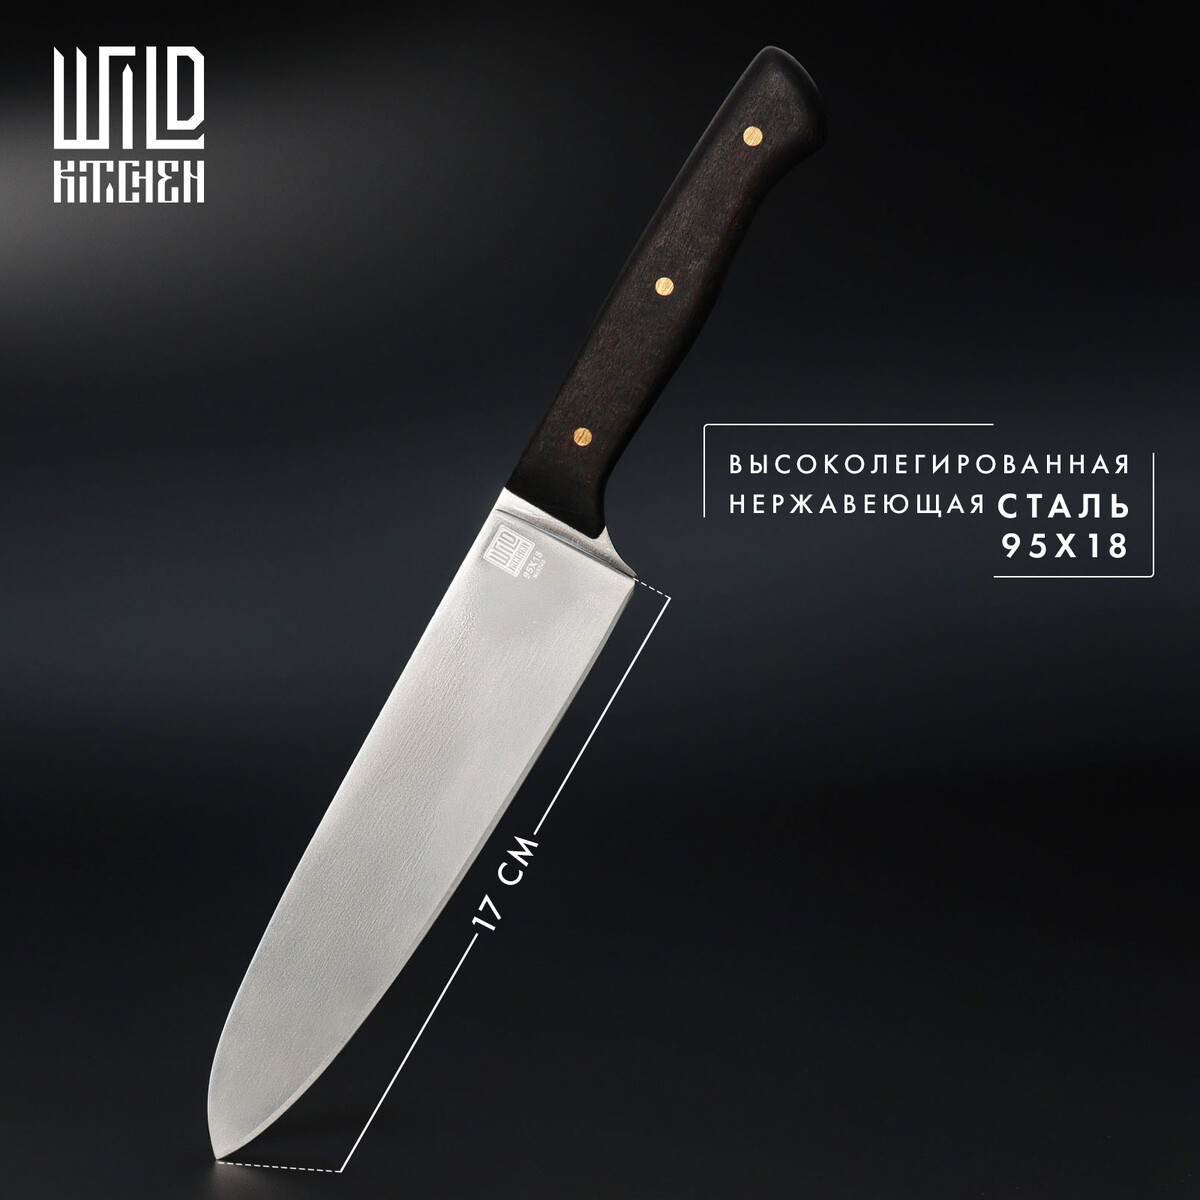 Нож кухонный - шеф wild kitchen, сталь 95×18, лезвие 17 см нож кухонный daniks wood шеф нож нержавеющая сталь 20 см рукоятка дерево 160939 1